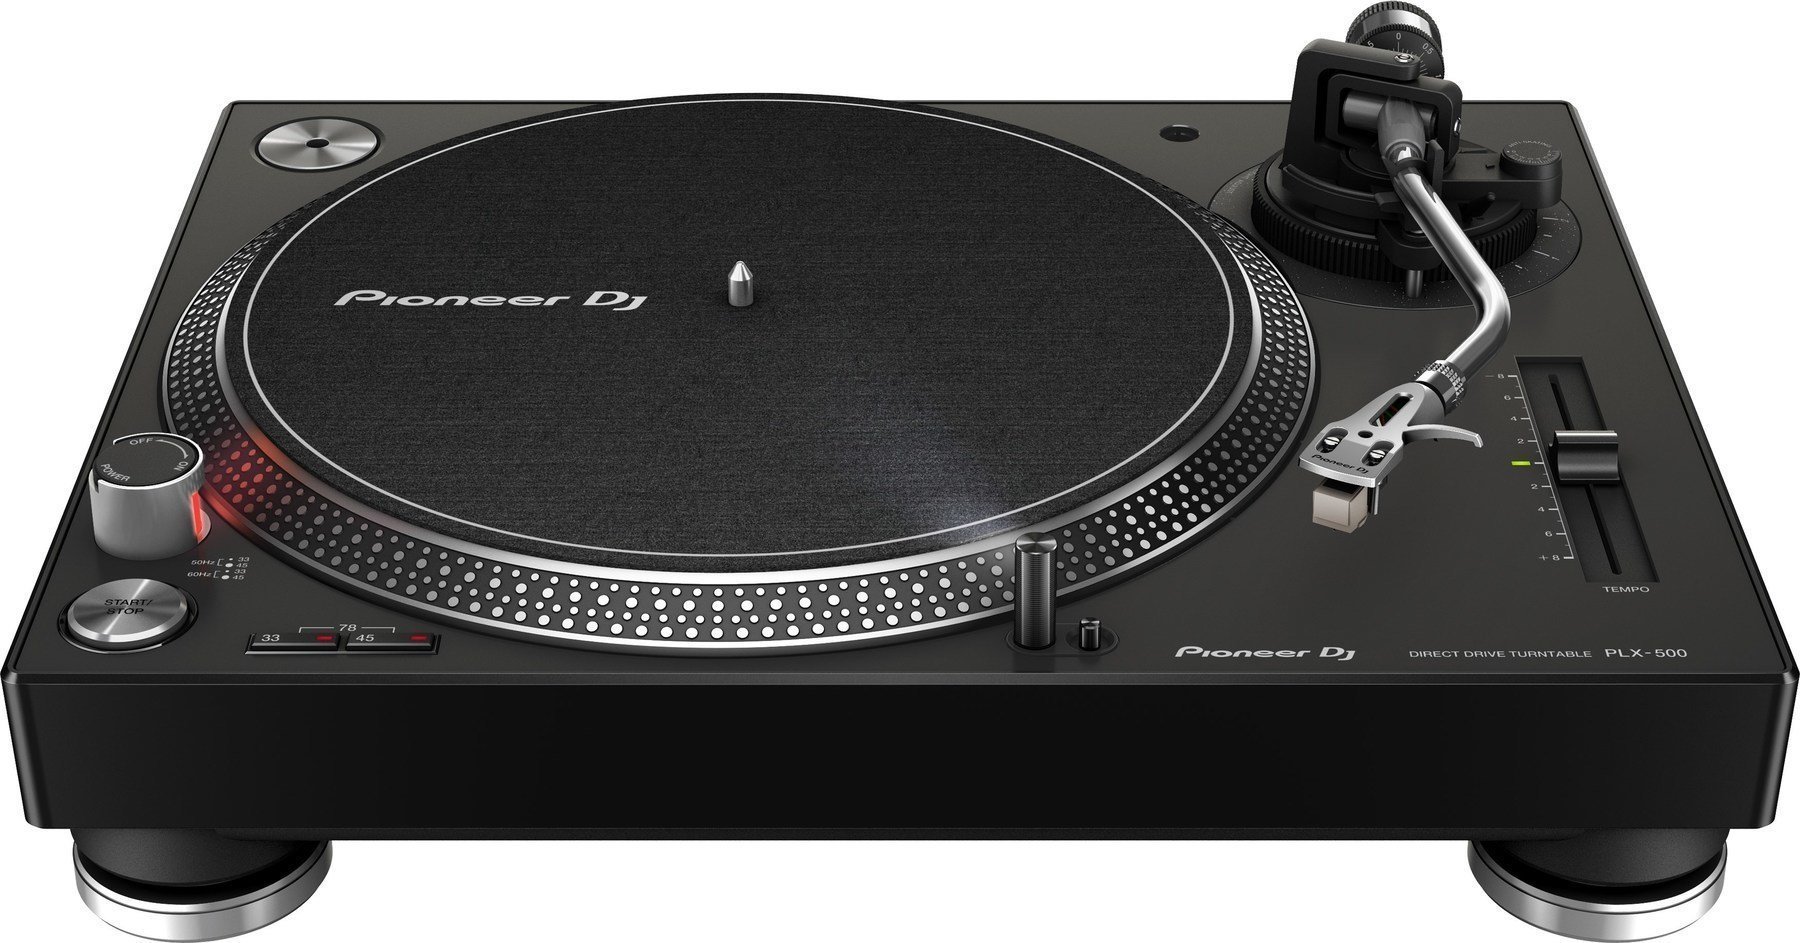 DJ Turntable Pioneer Dj PLX-500 Black DJ Turntable